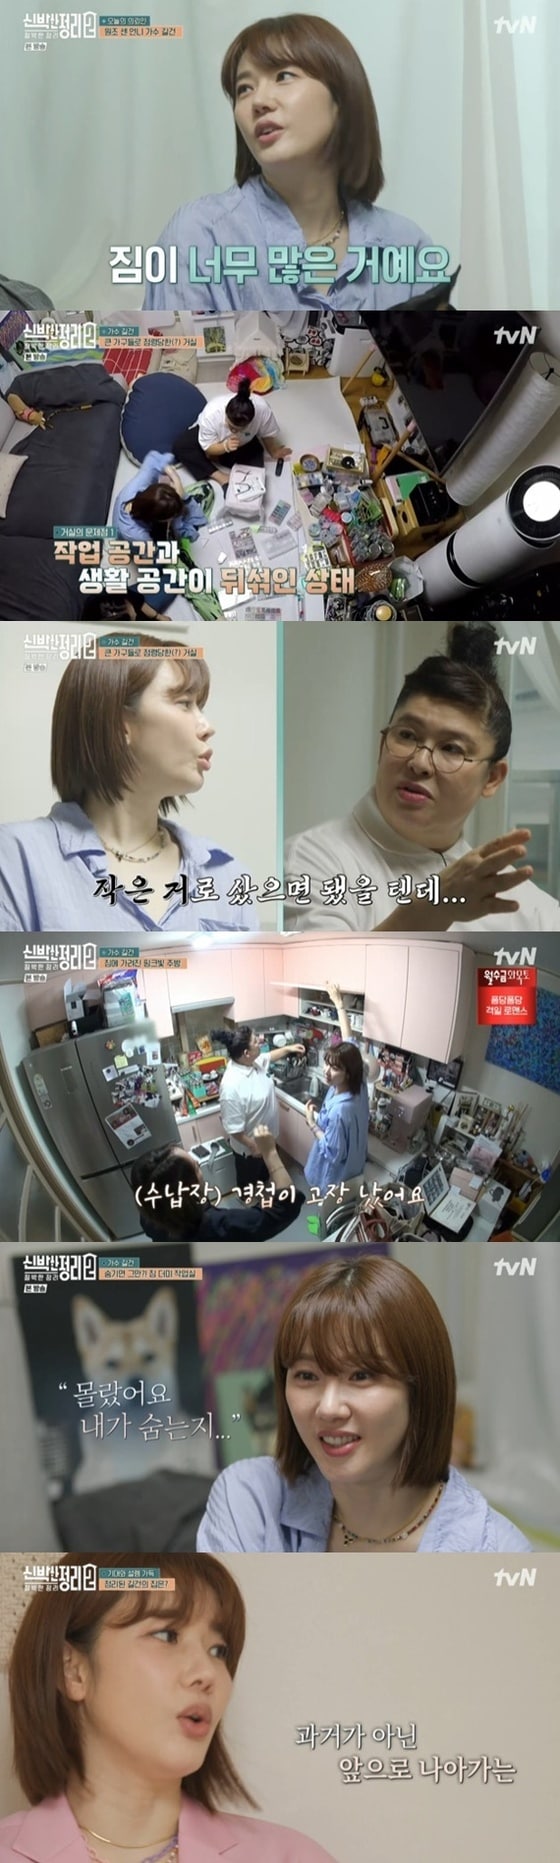 tvN '신박한 정리2 : 절박한 정리'